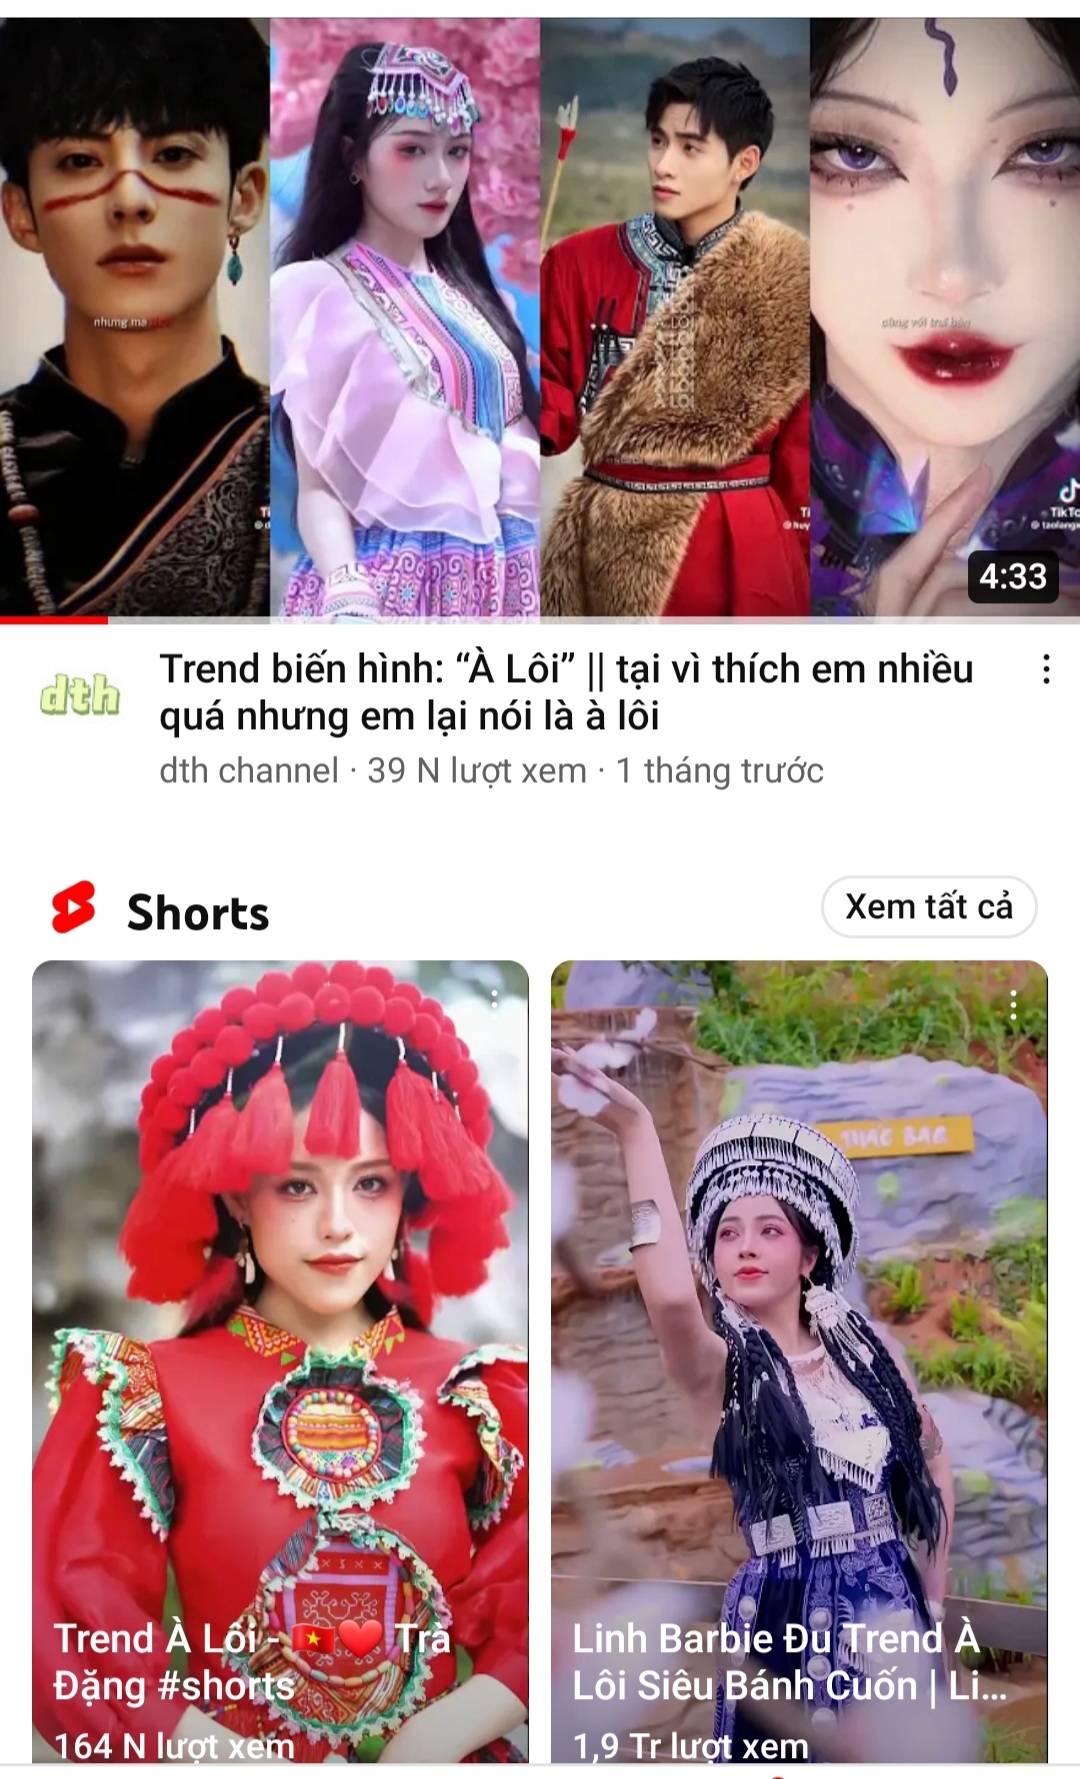 Việc giới trẻ “bắt hot trend” theo bài hát À Lôi sử dụng hình ảnh về trang phục dân tộc khác có thể gây hiểu lầm cho cộng đồng về trang phục của đồng bào các DTTS